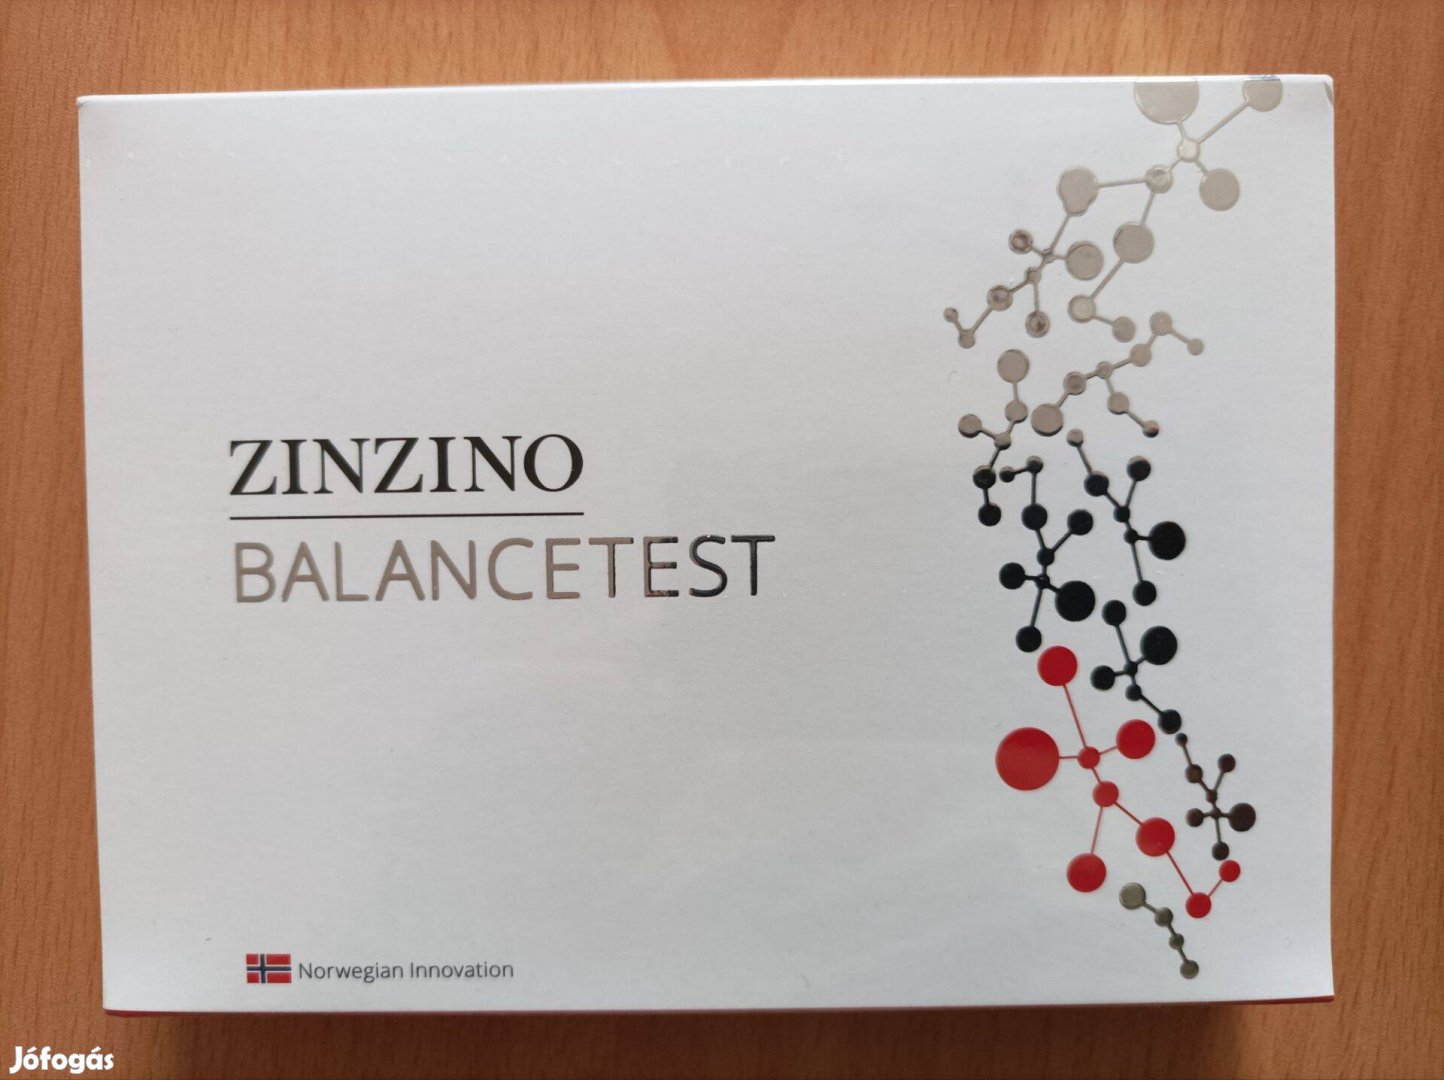 Zinzino Balancetest